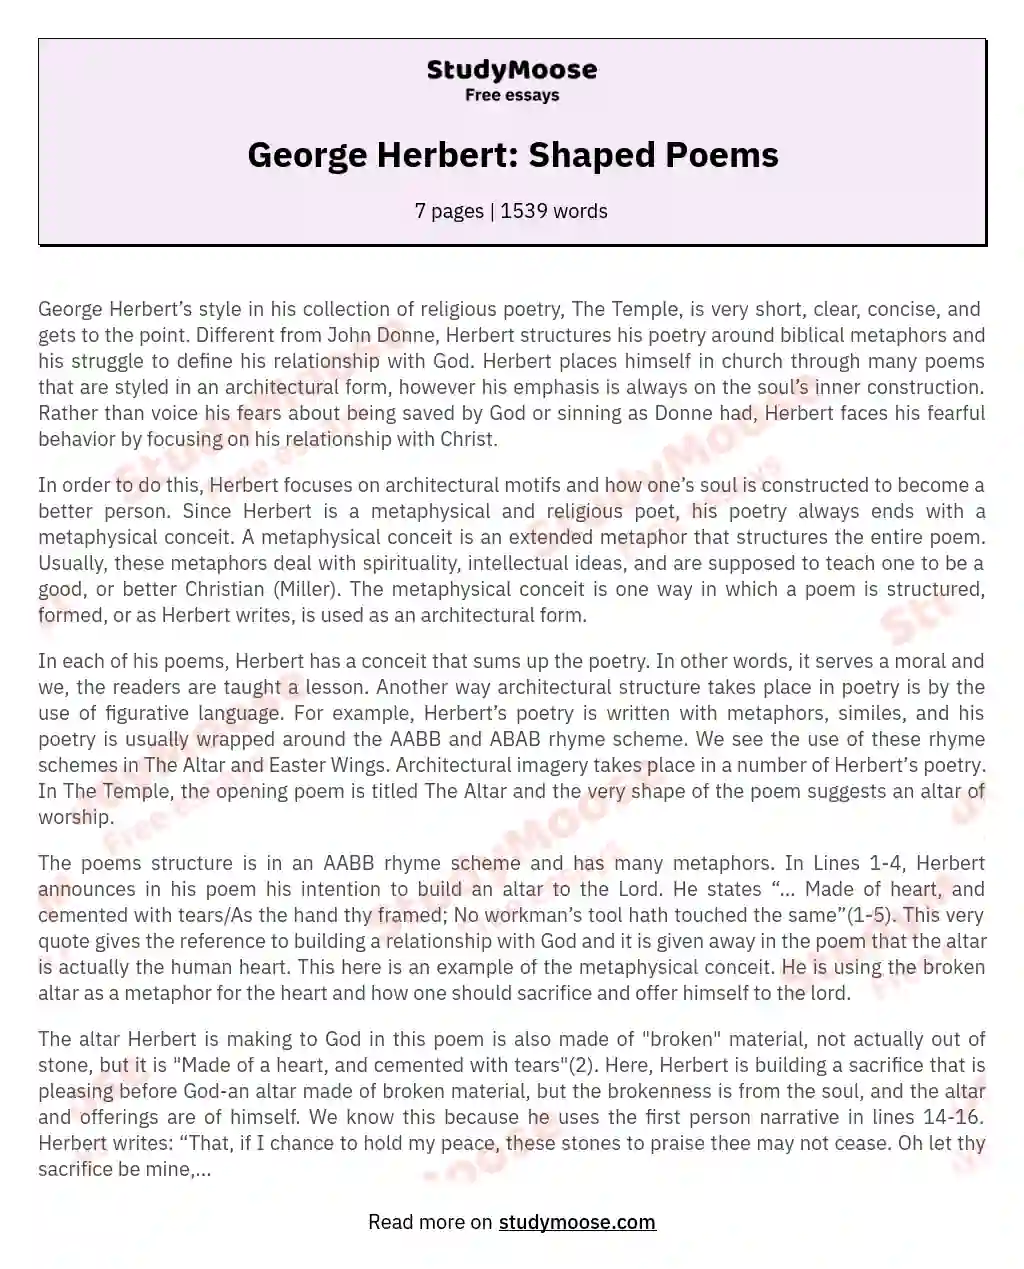 George Herbert: Shaped Poems essay